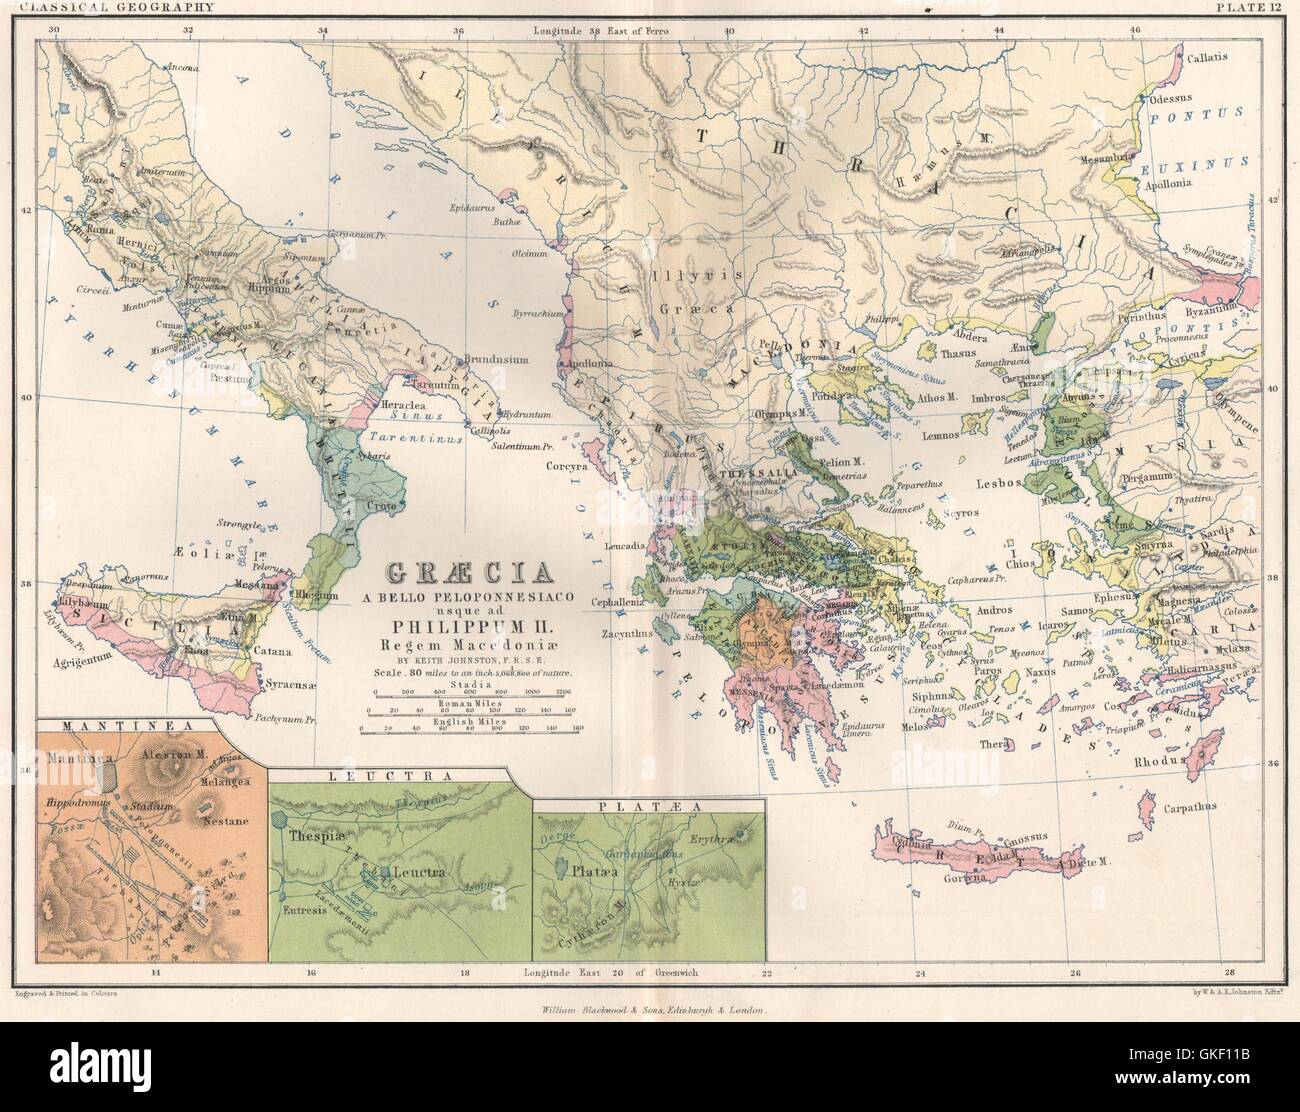 "Graecia un bello Peloponnesiaco usque ad. Philippum II…' Antica Grecia 1855 mappa Foto Stock